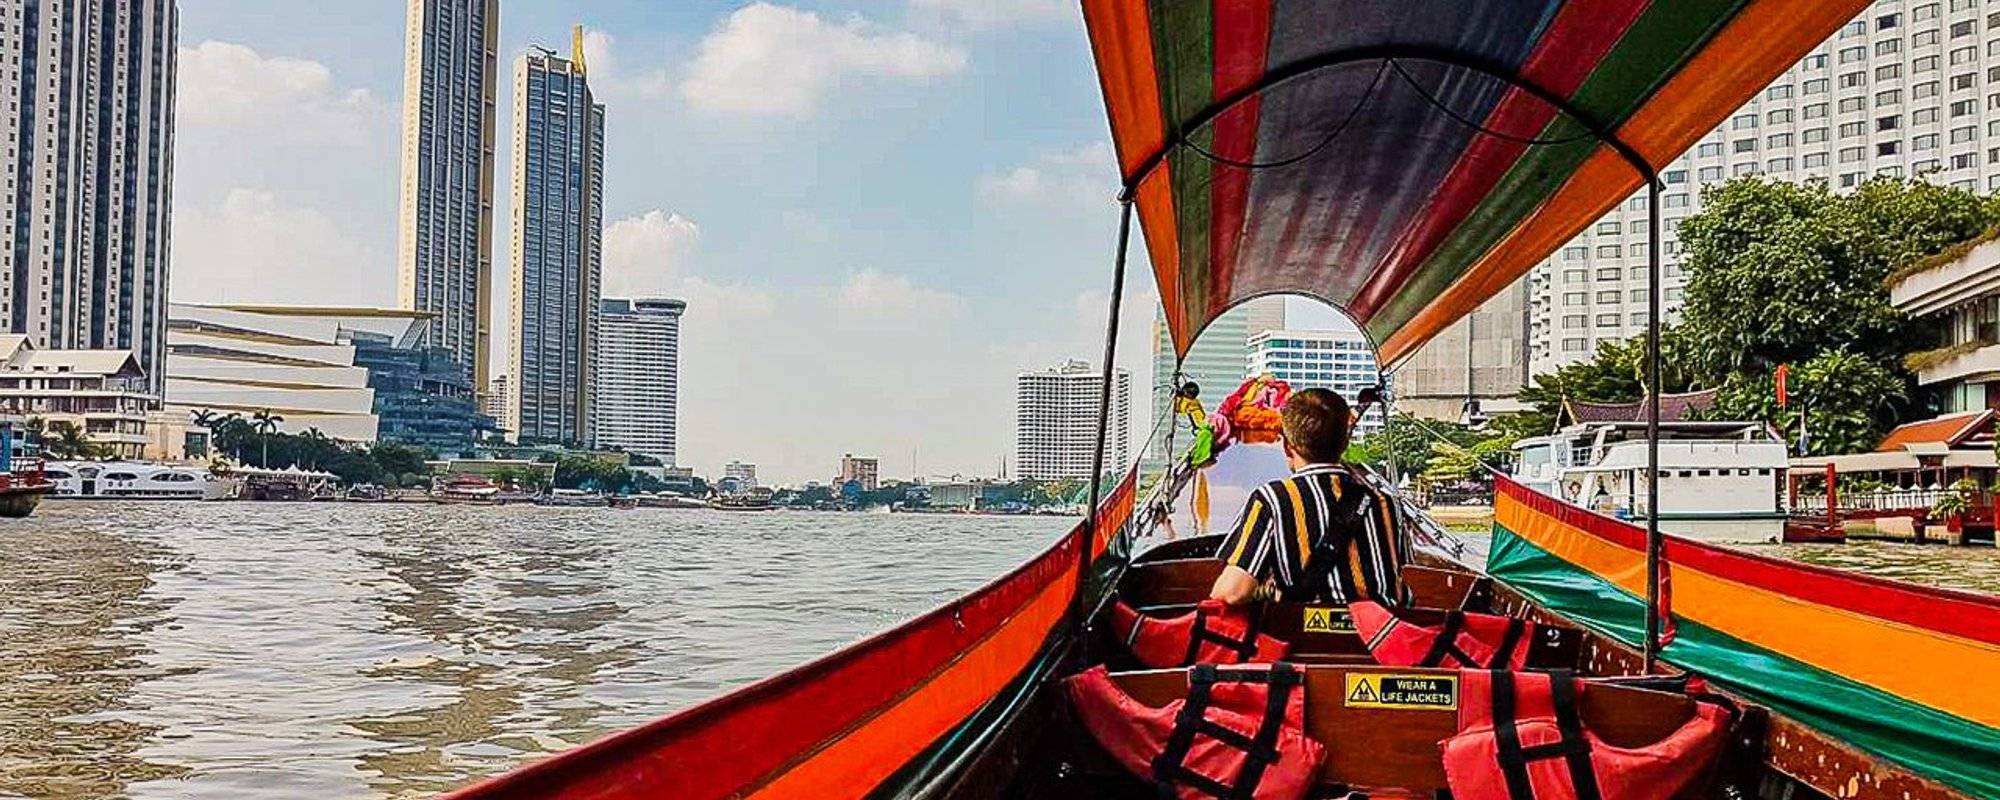 Taking Bangkok's public transport to Wat Pho and Wat Arun